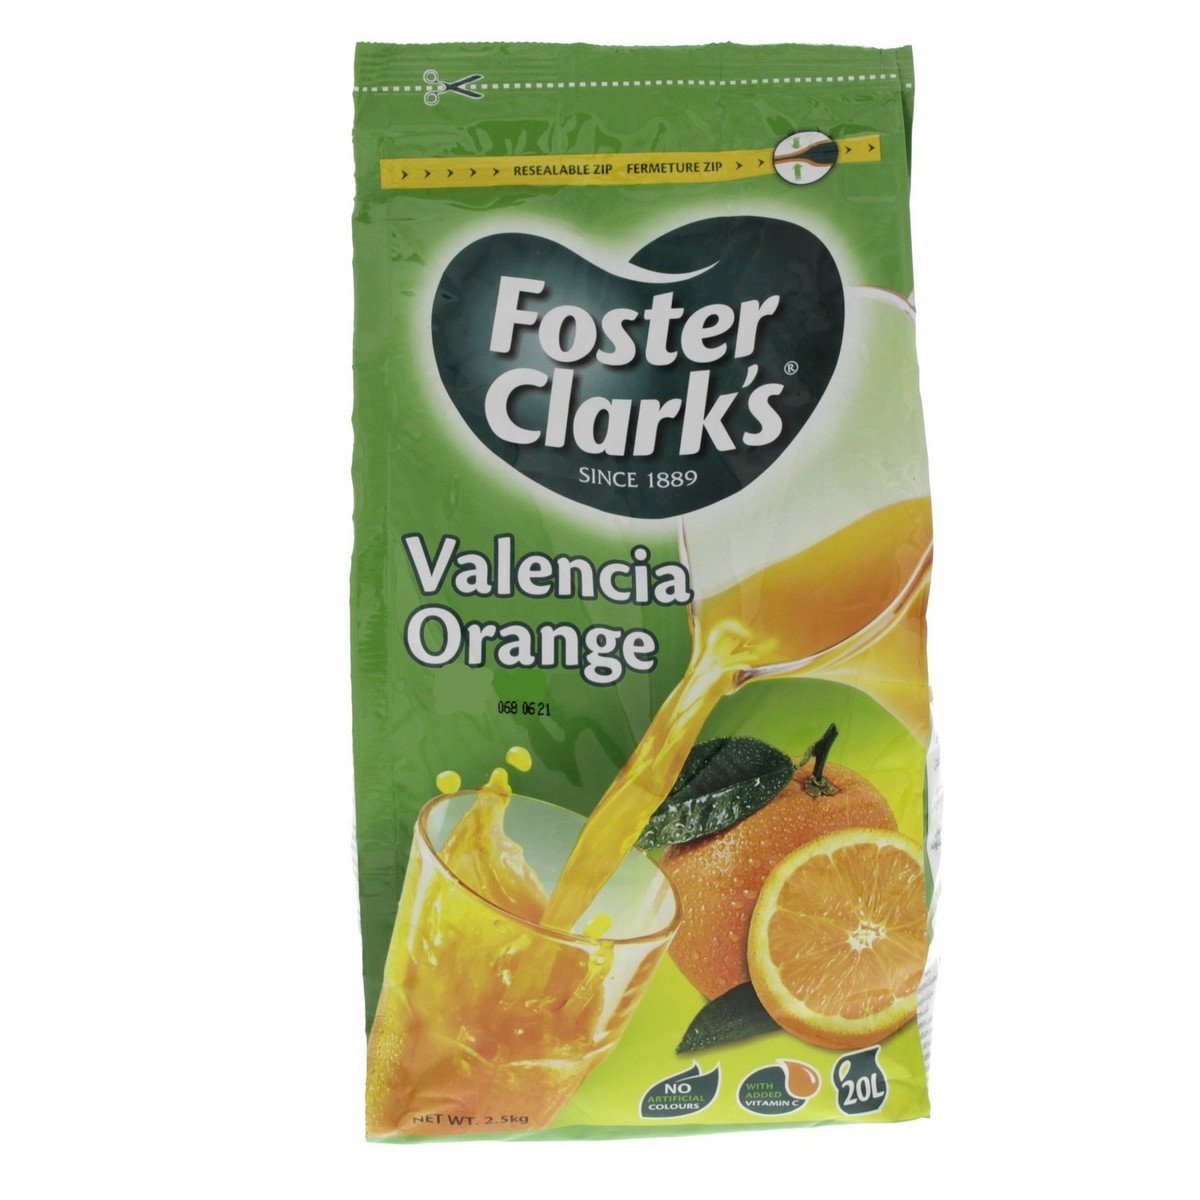 Foster Clark's Valencia Orange Instant Drink 2.5kg